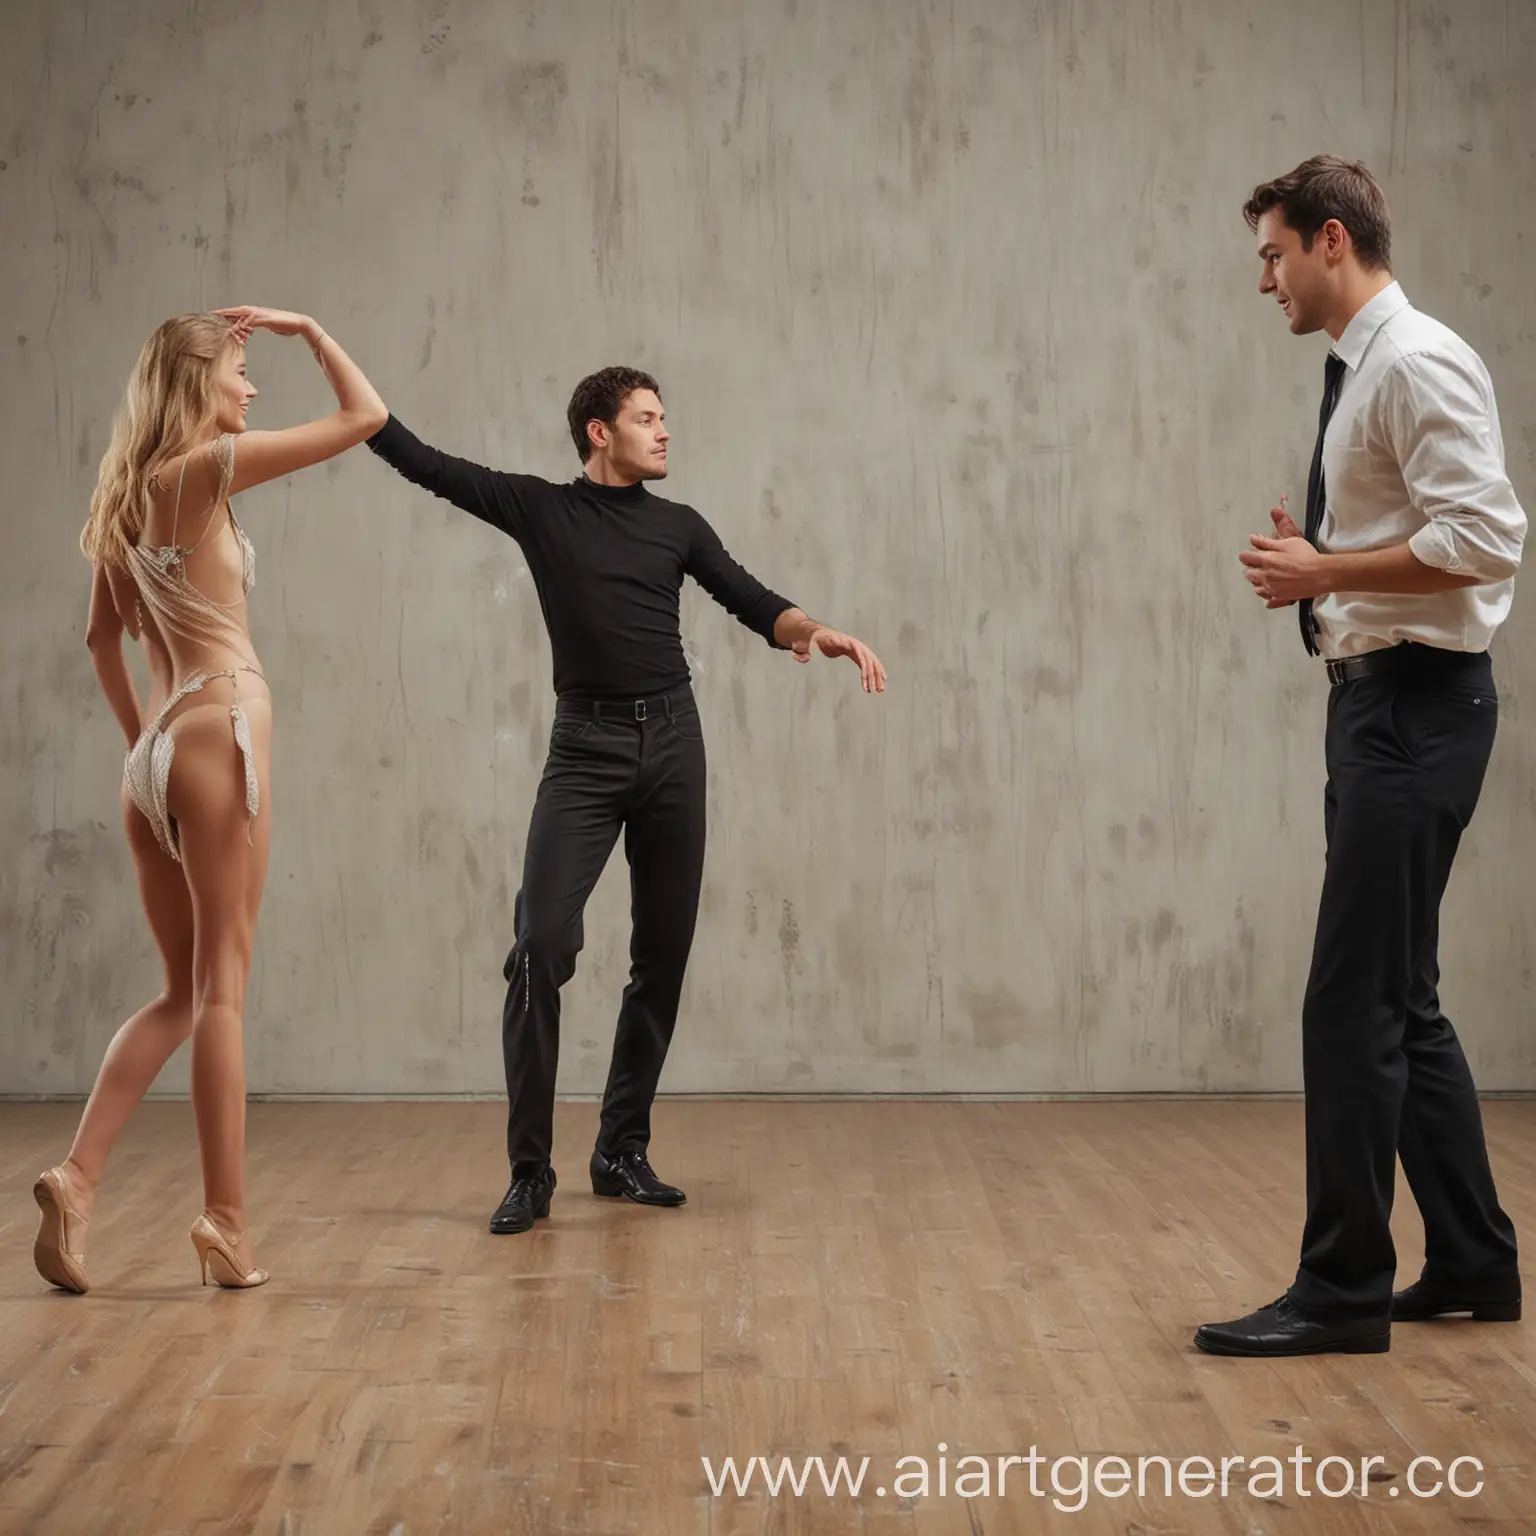 мужчина смотрит на танцующих мужчину и женщину